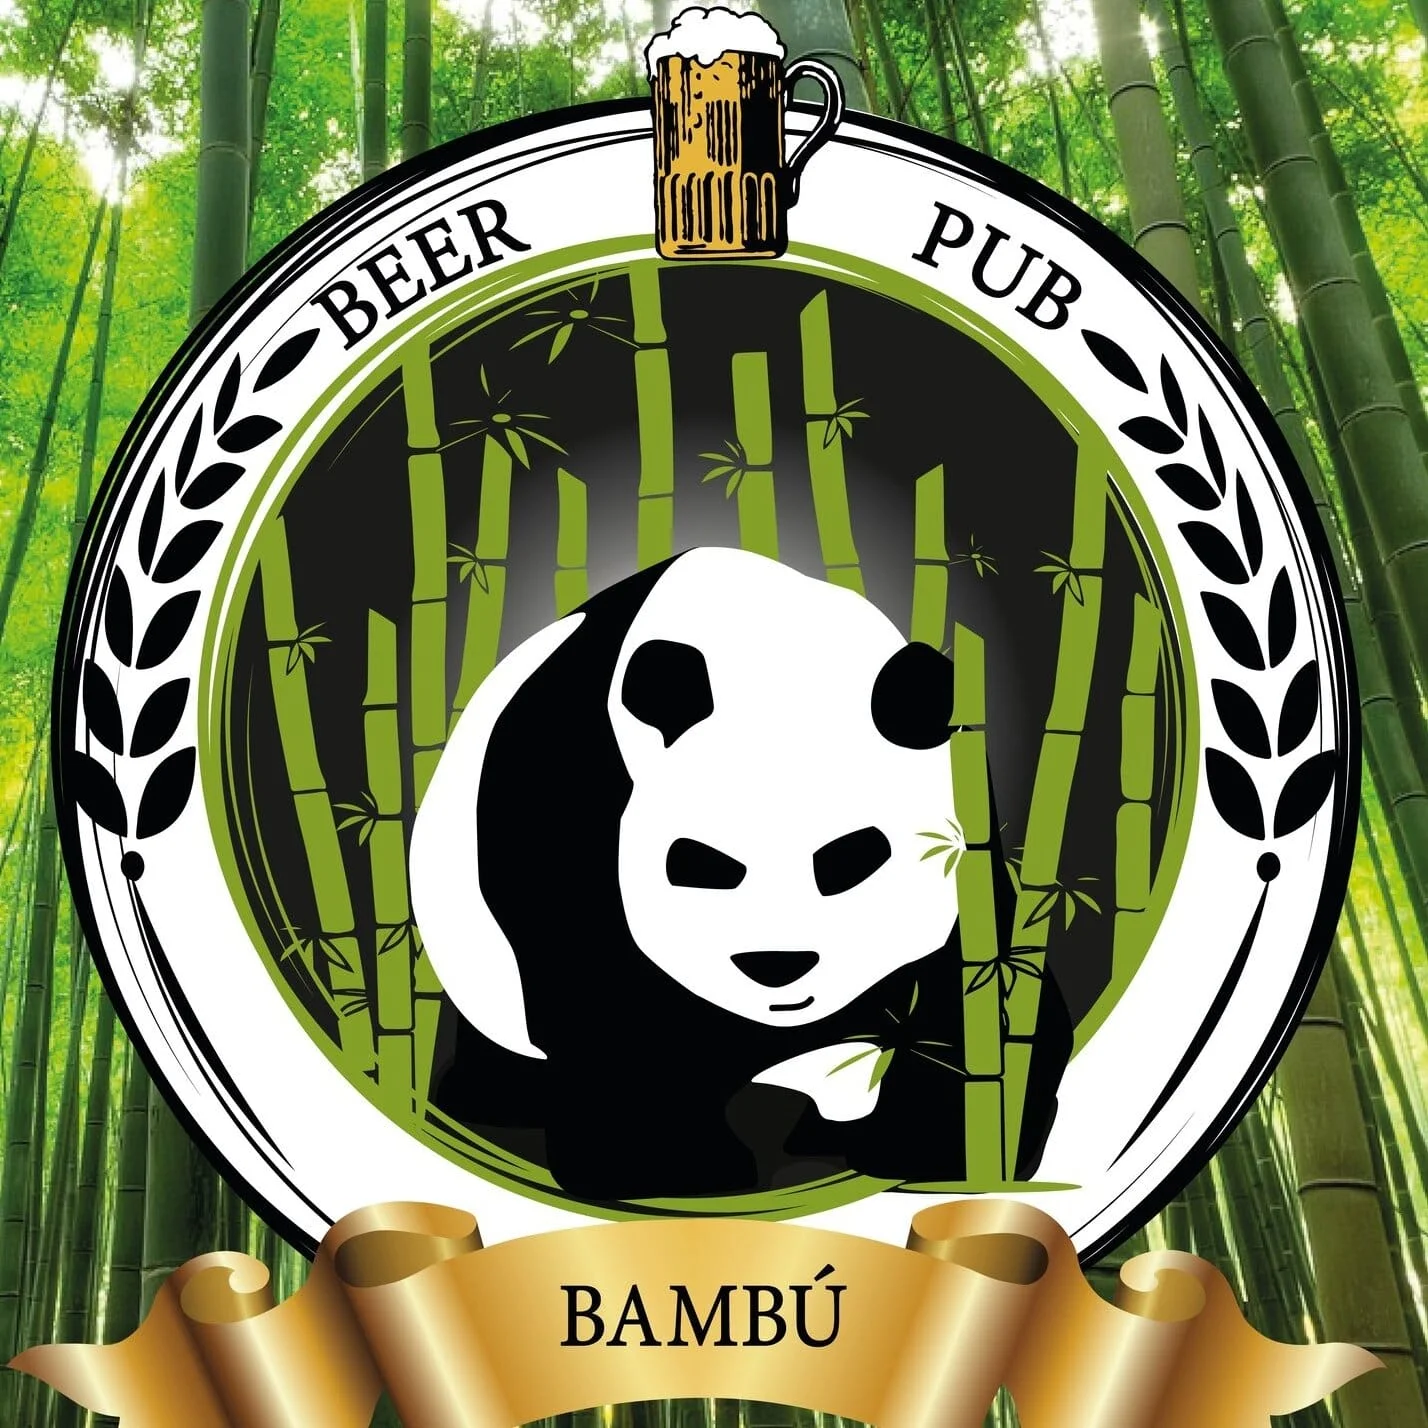 Bambú Beer Pub-10814